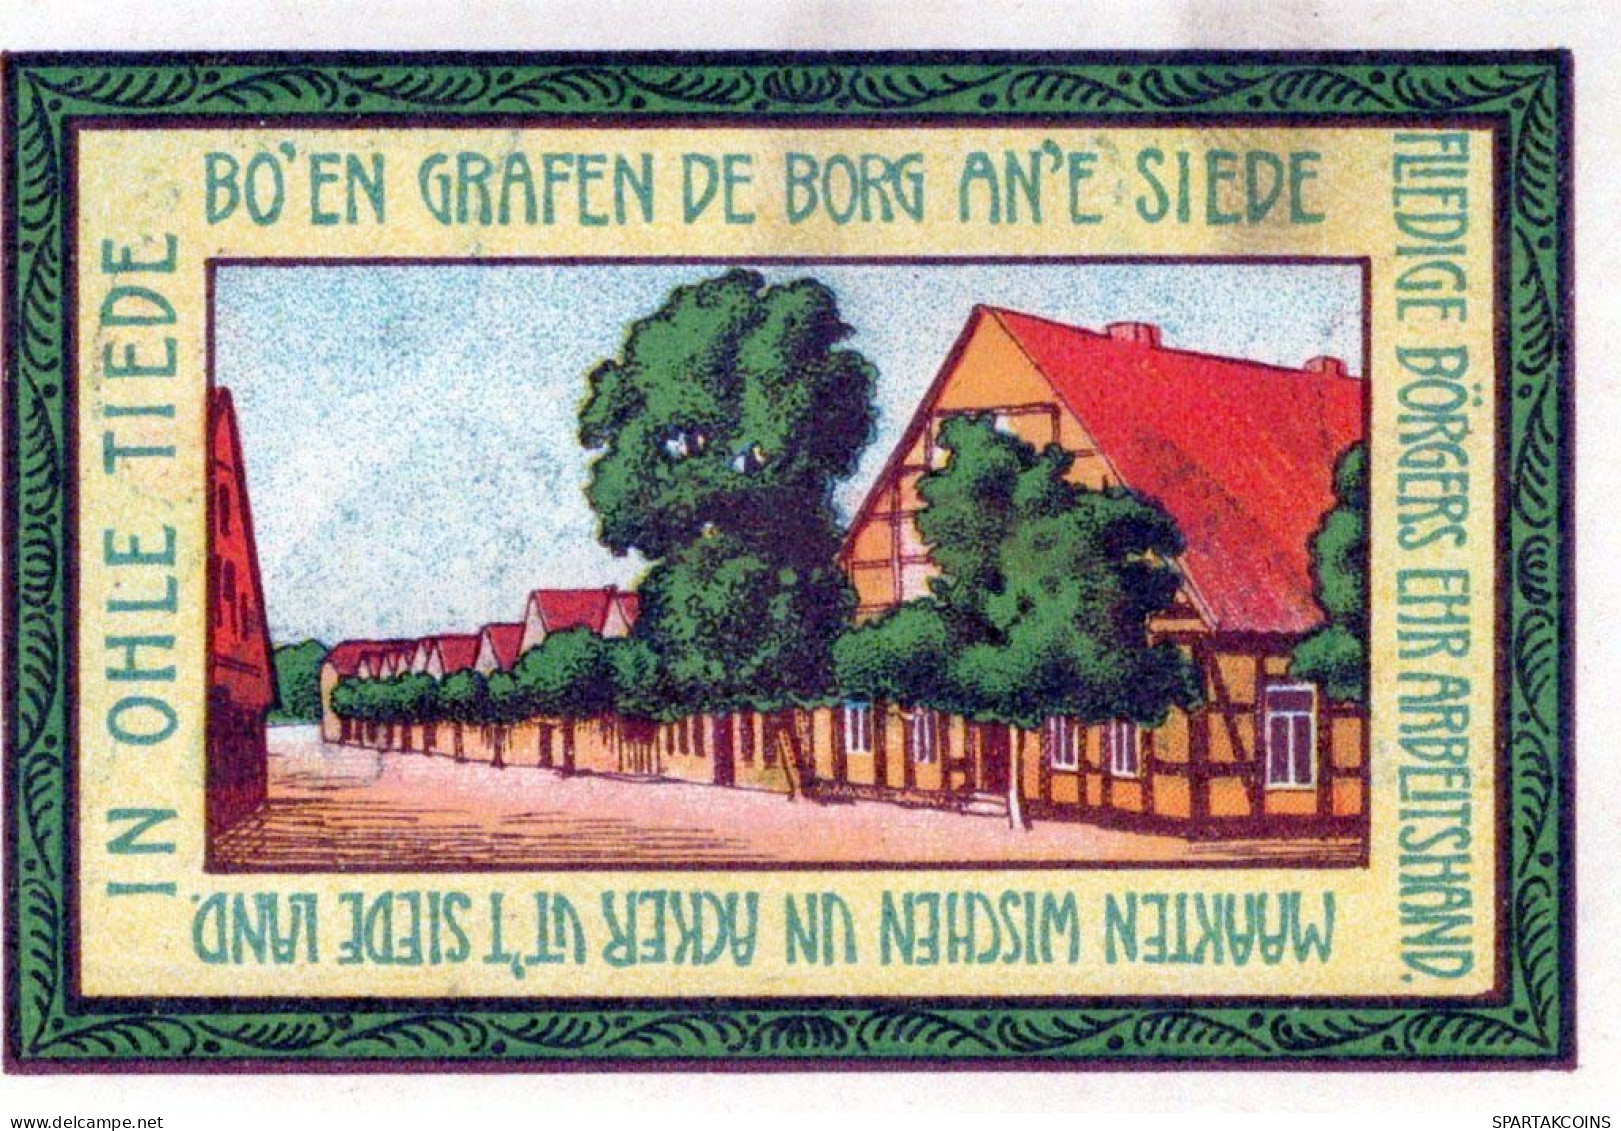 75 PFENNIG 1921 Stadt SIEDENBURG Hanover DEUTSCHLAND Notgeld Banknote #PG144 - Lokale Ausgaben